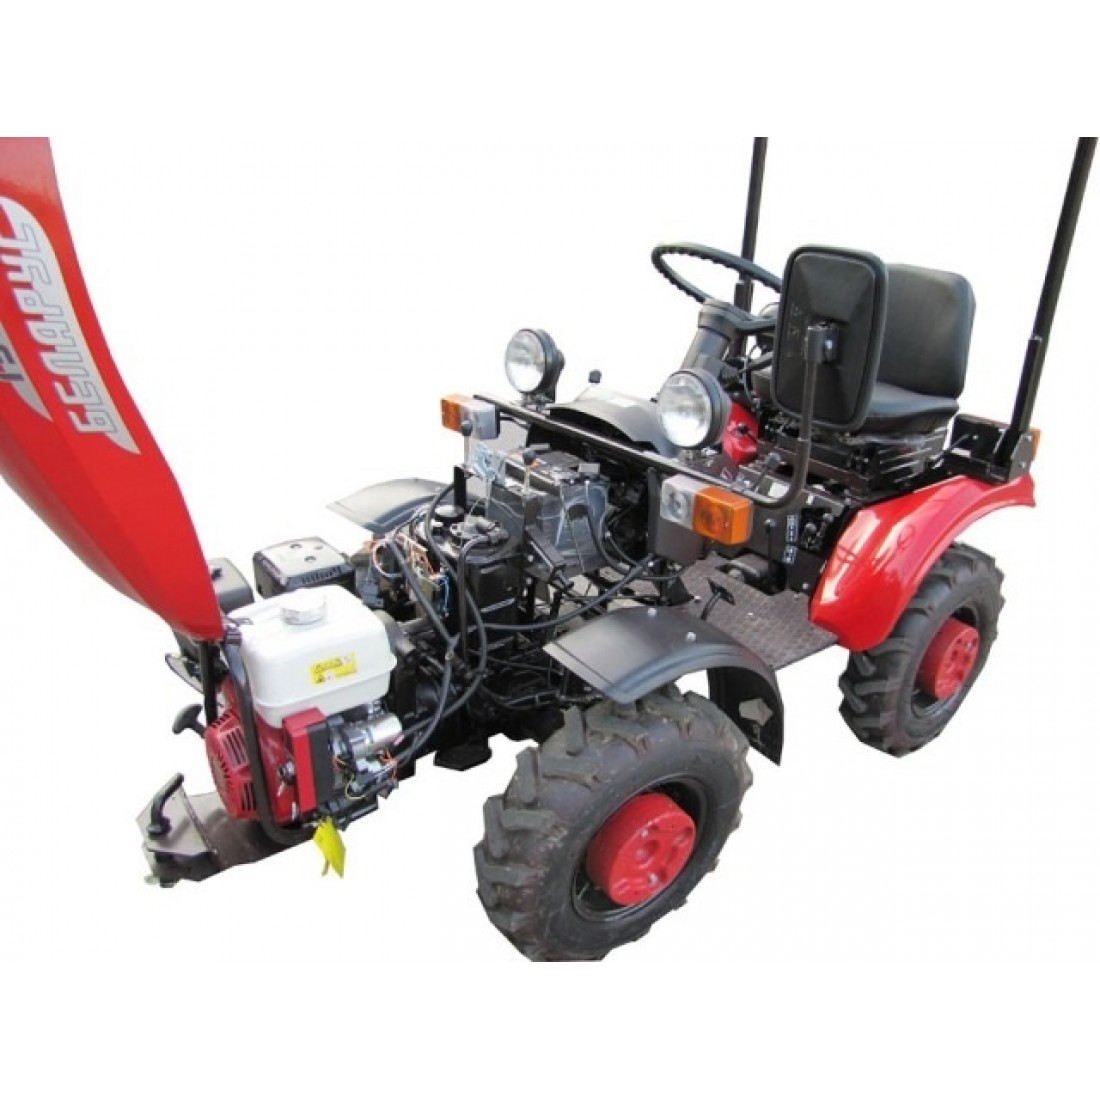 Мини трактор мтз-152 беларус технические характеристики и устройство, навесное оборудование и отзывы